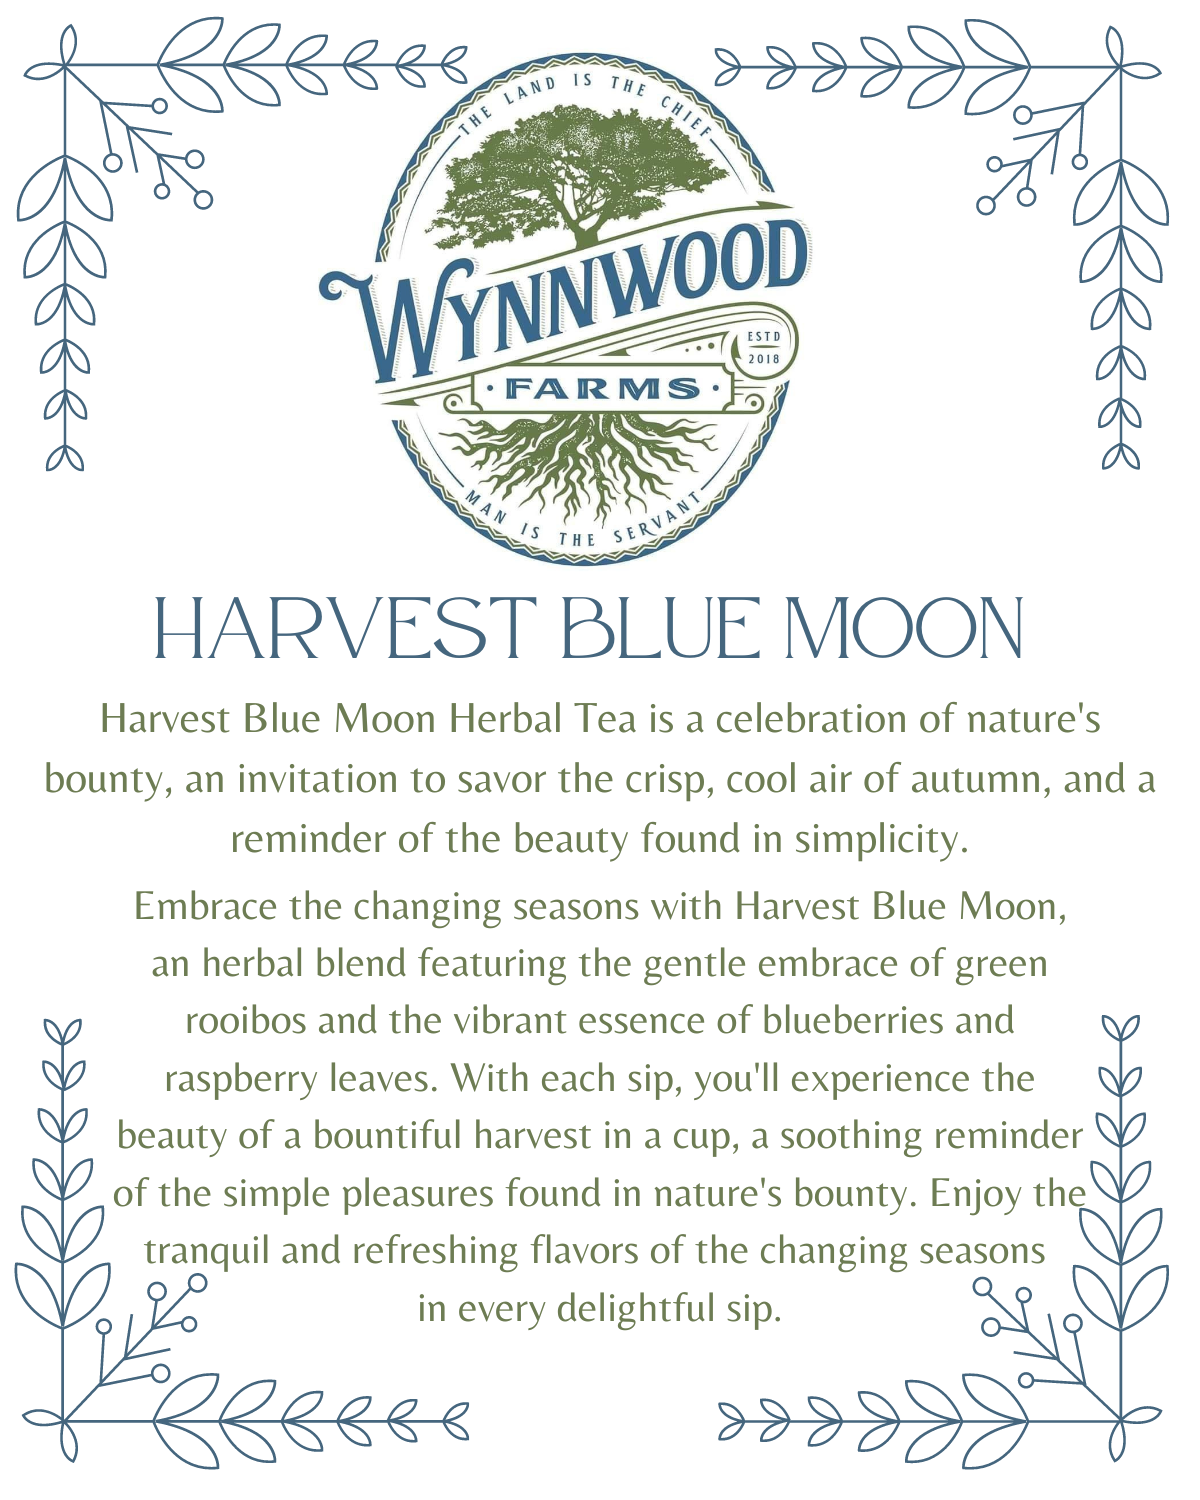 Harvest Blue Moon